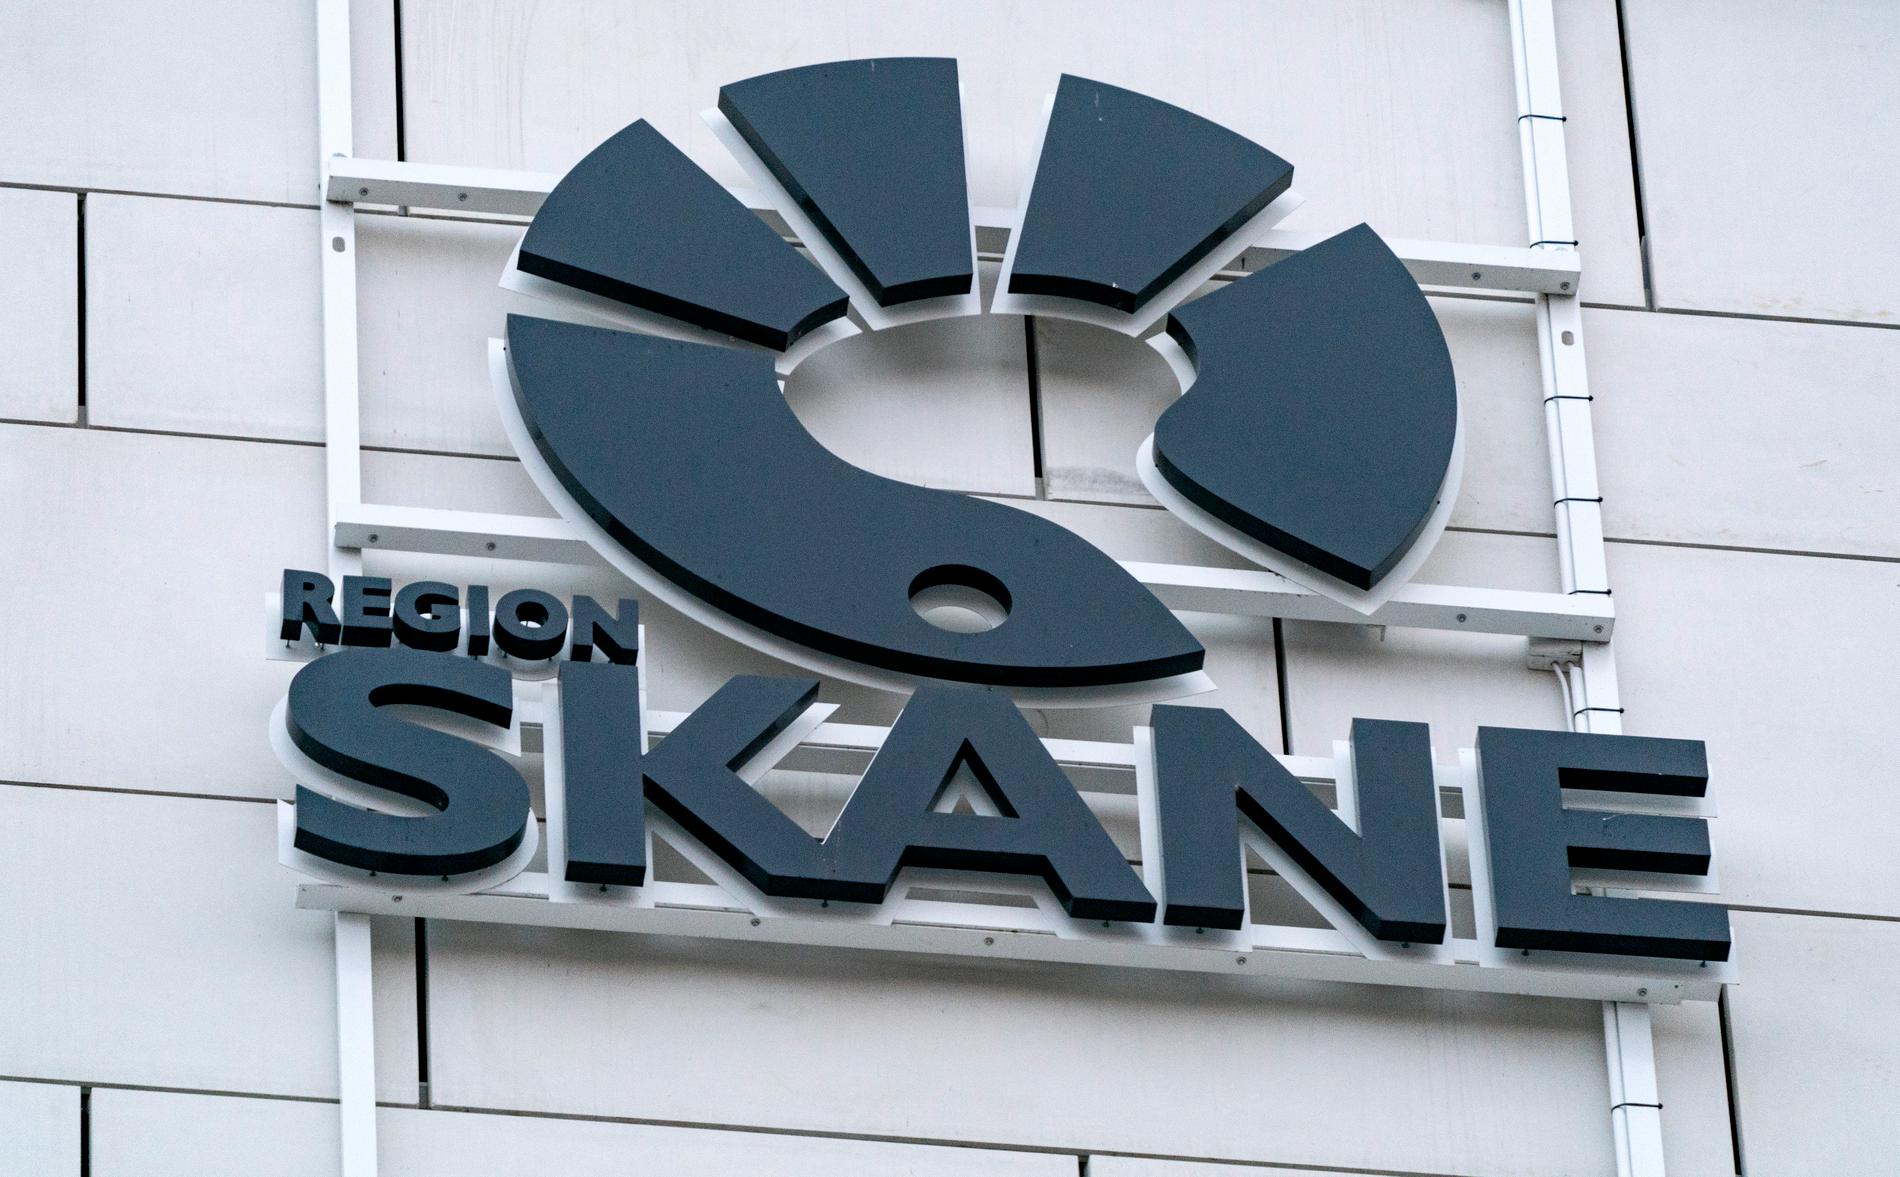 Region Skånes logga på en fasad